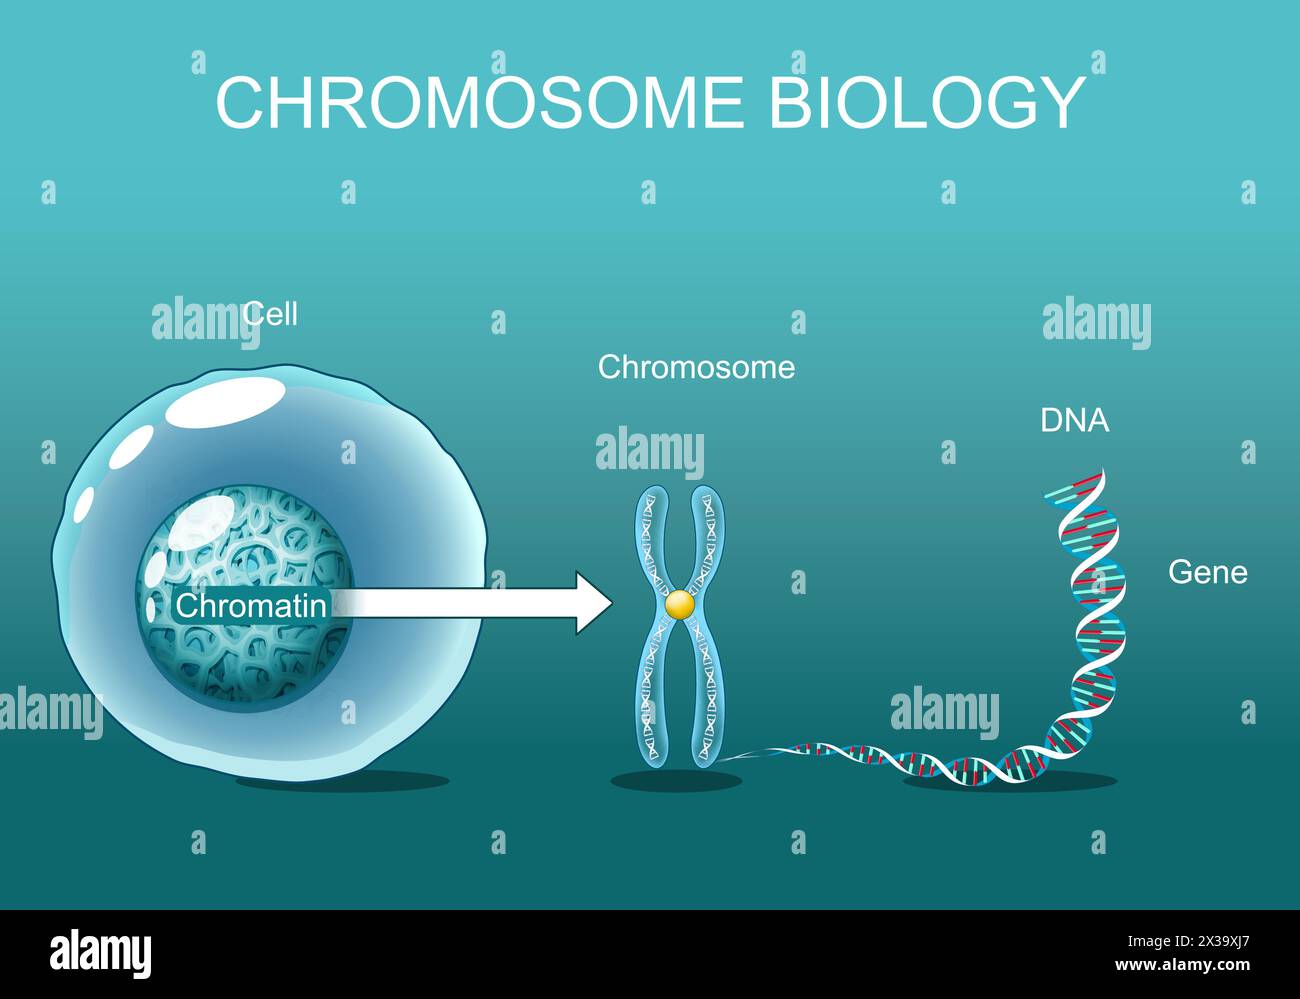 Structure de cellule. Chromatine. Biologie chromosomique. De la cellule au chromosome, au gène et à l'ADN. Séquence génomique. Affiche vectorielle. Illustration plate isométrique. Illustration de Vecteur